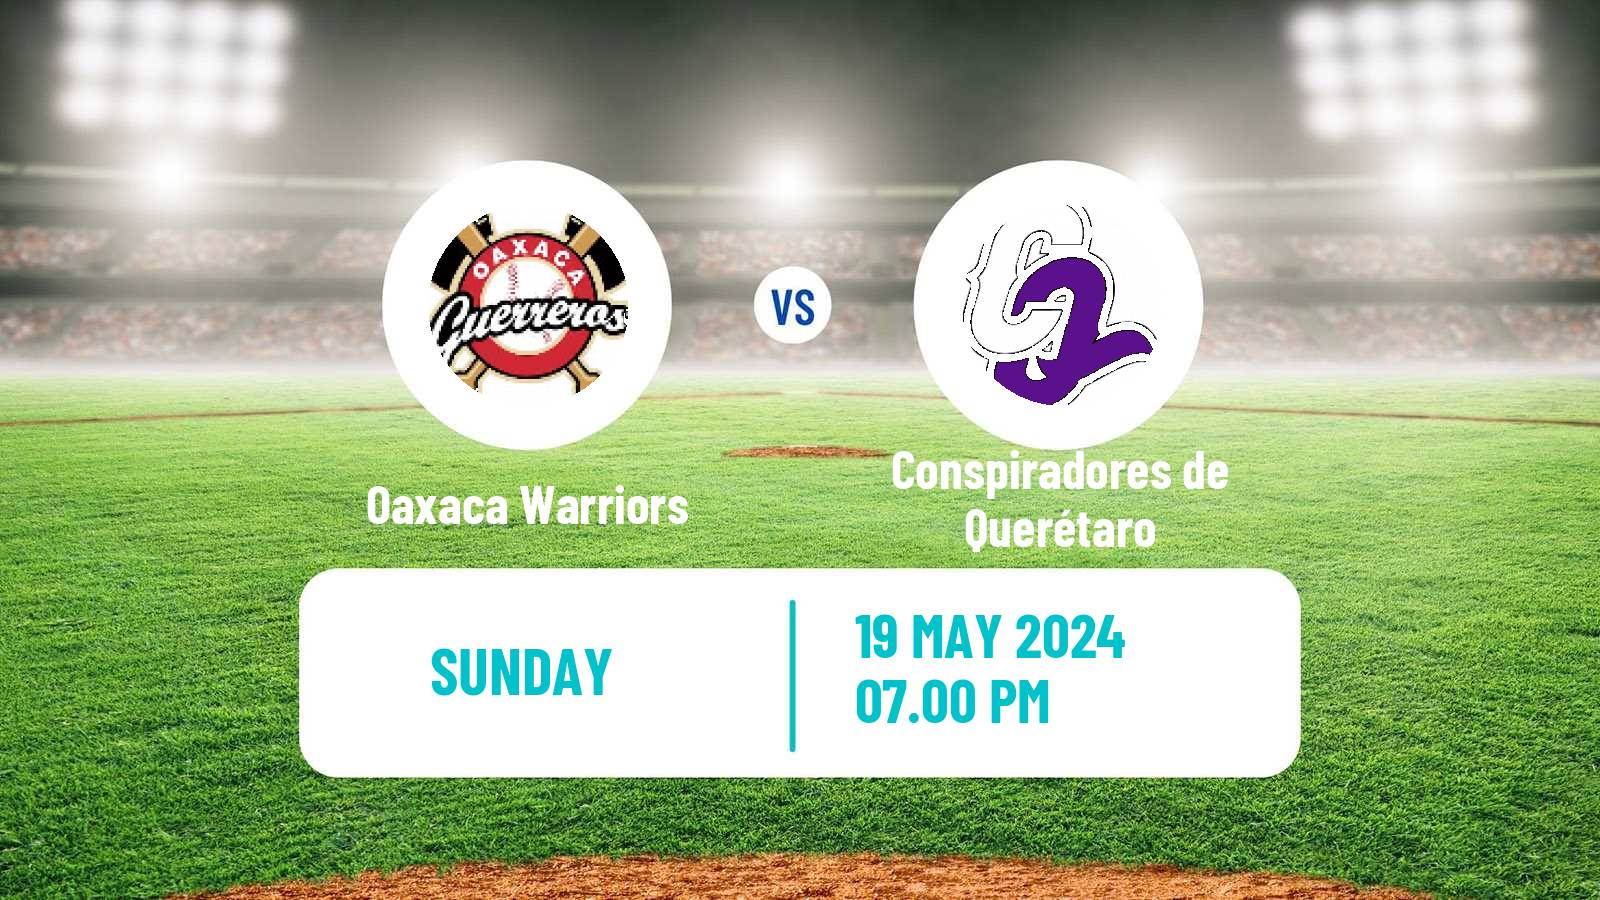 Baseball LMB Oaxaca Warriors - Conspiradores de Querétaro